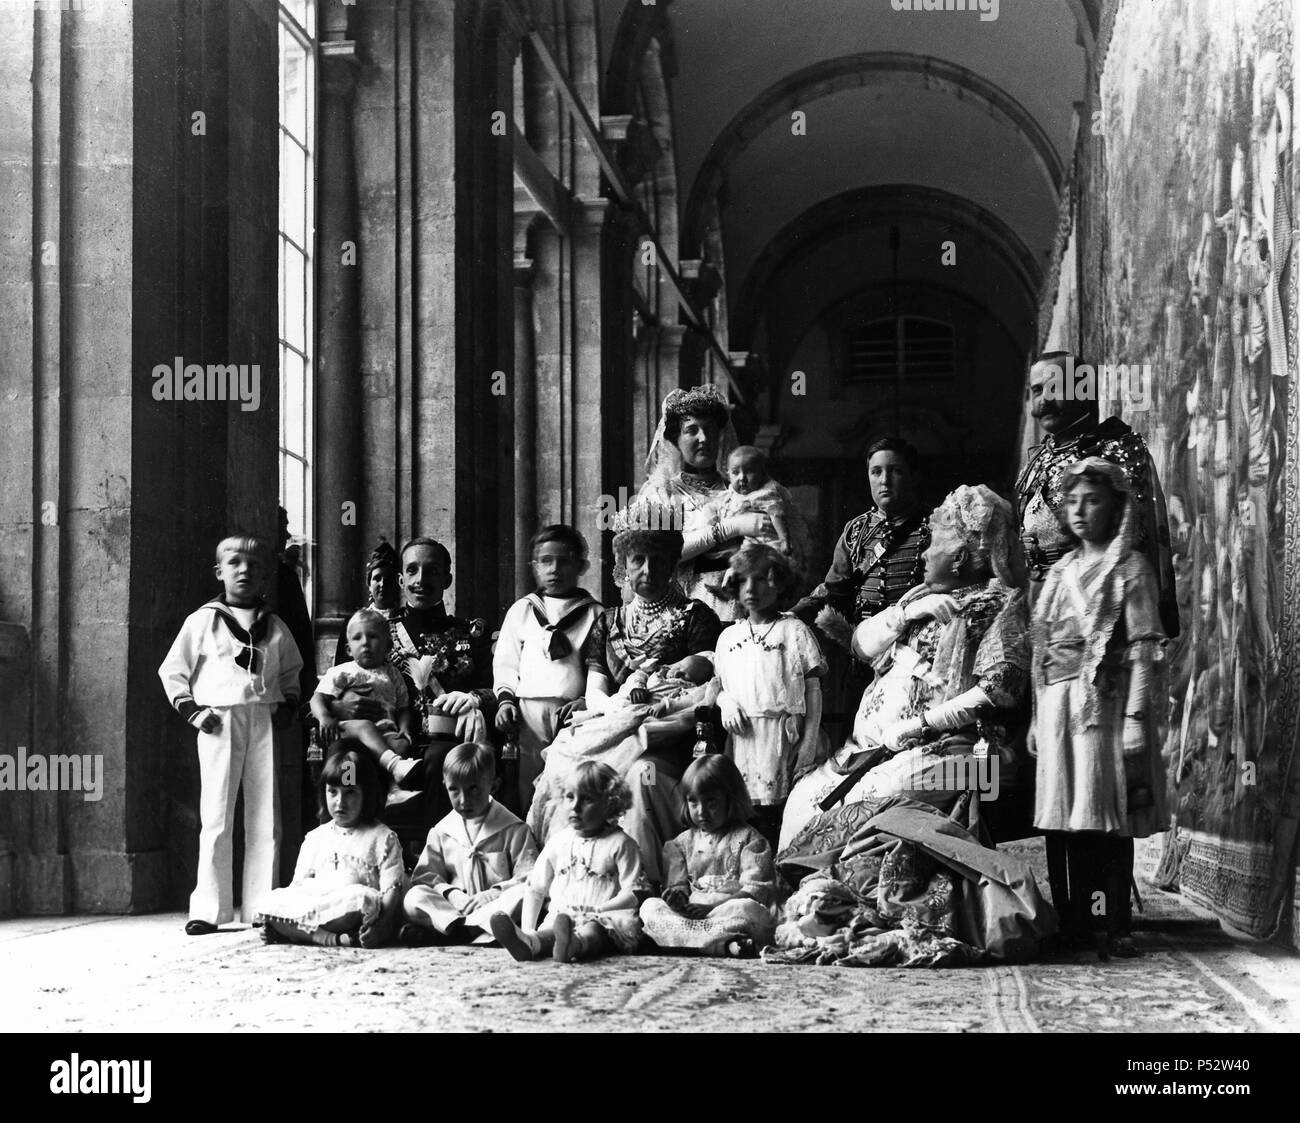 BAUTIZO DEL INFANTE GONZALO HIJO DE ALFONSO XIII Y VICTORIA EUGENIA EL 29 DE OCTUBRE DE 1914 EN LA CAPILLA DEL PALACIO REAL DE MADRID. Location: PALACIO REAL-INTERIOR, MADRID, SPAIN. Stock Photo